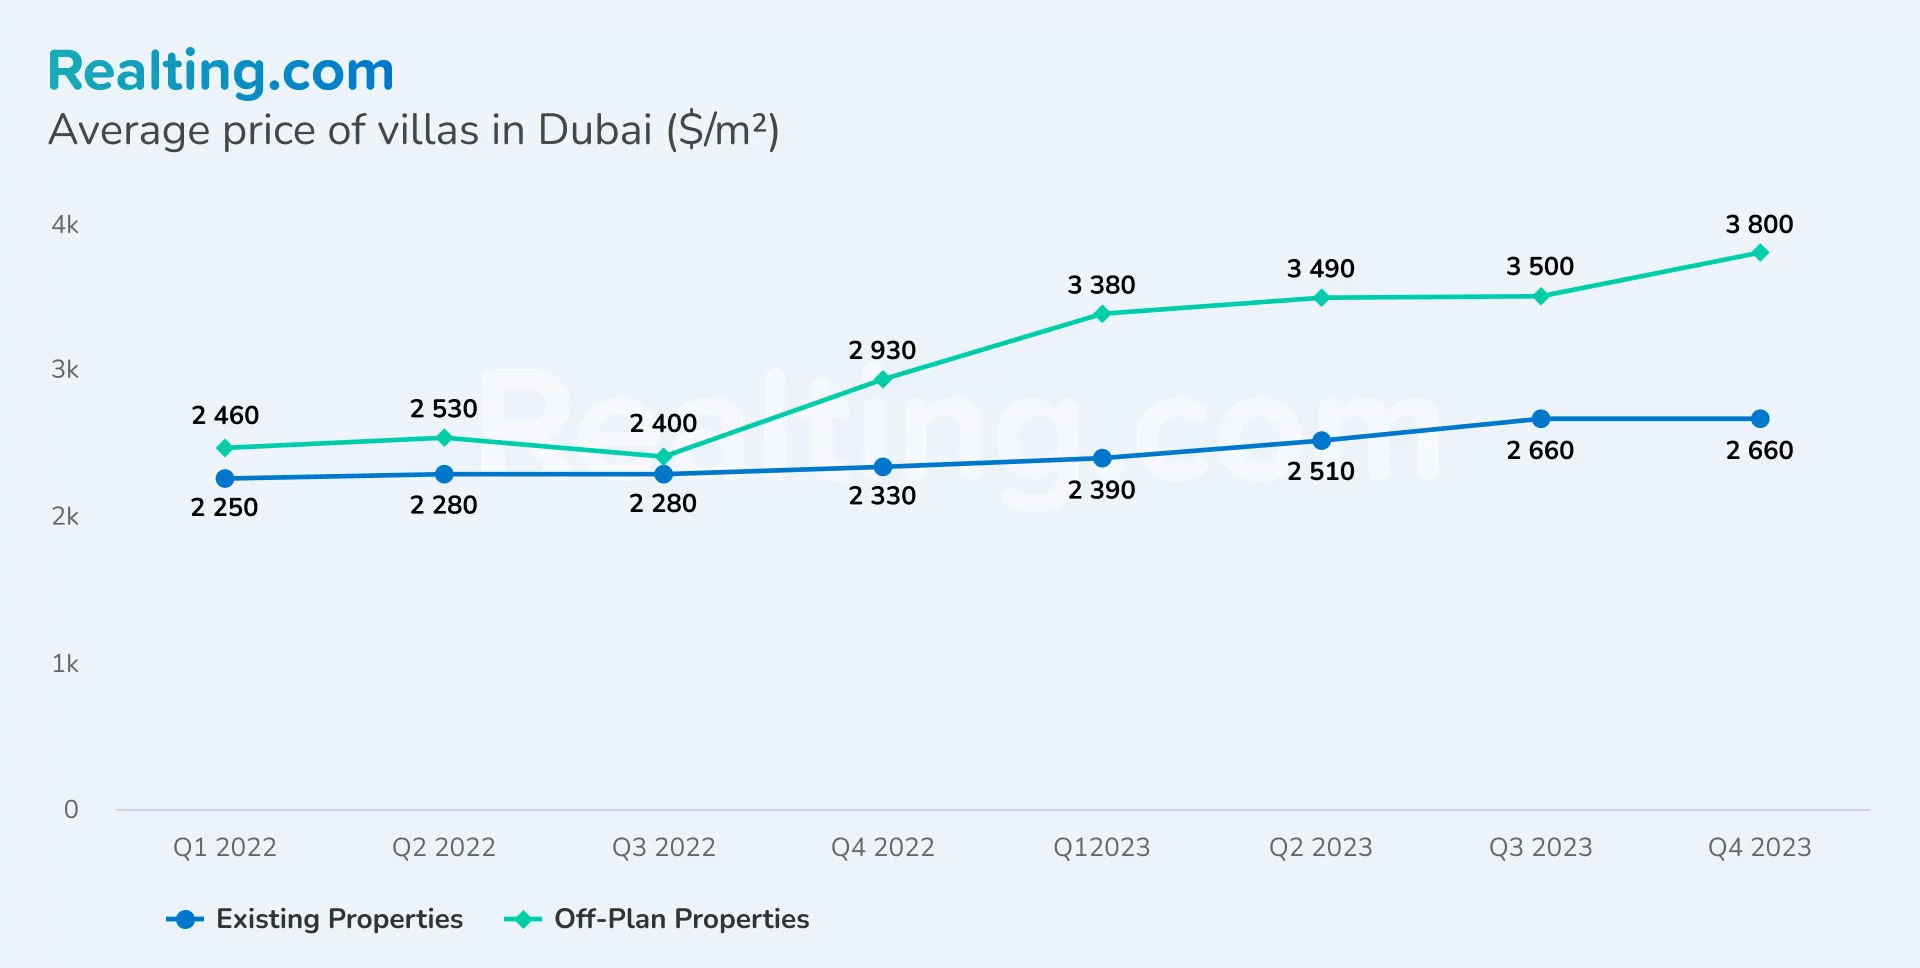 Average price per sq. m. of a villa in Dubai